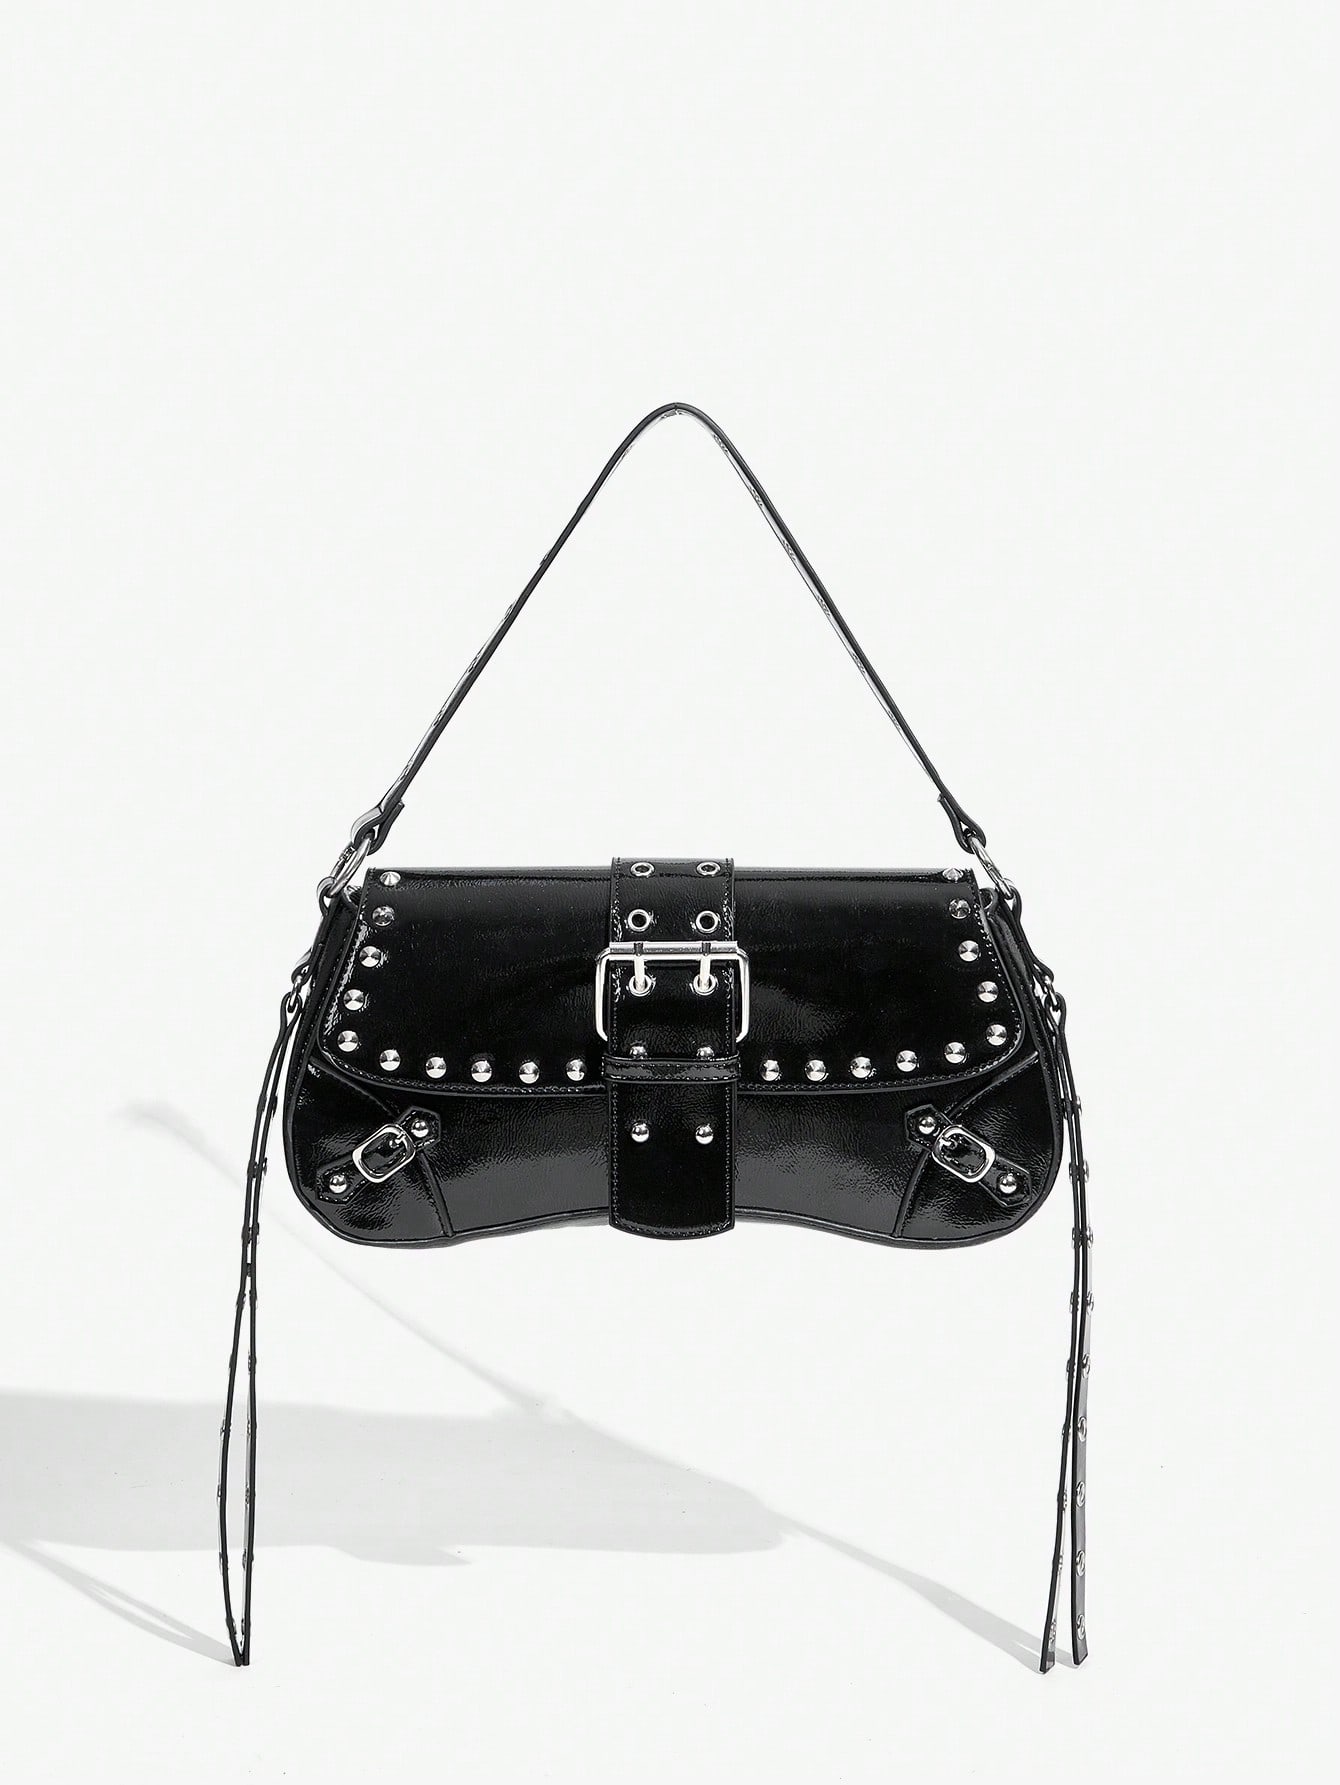 SHEIN SXY Женская модная простая черная сумка через плечо с заклепками, черный легкая уличная сумка хаки